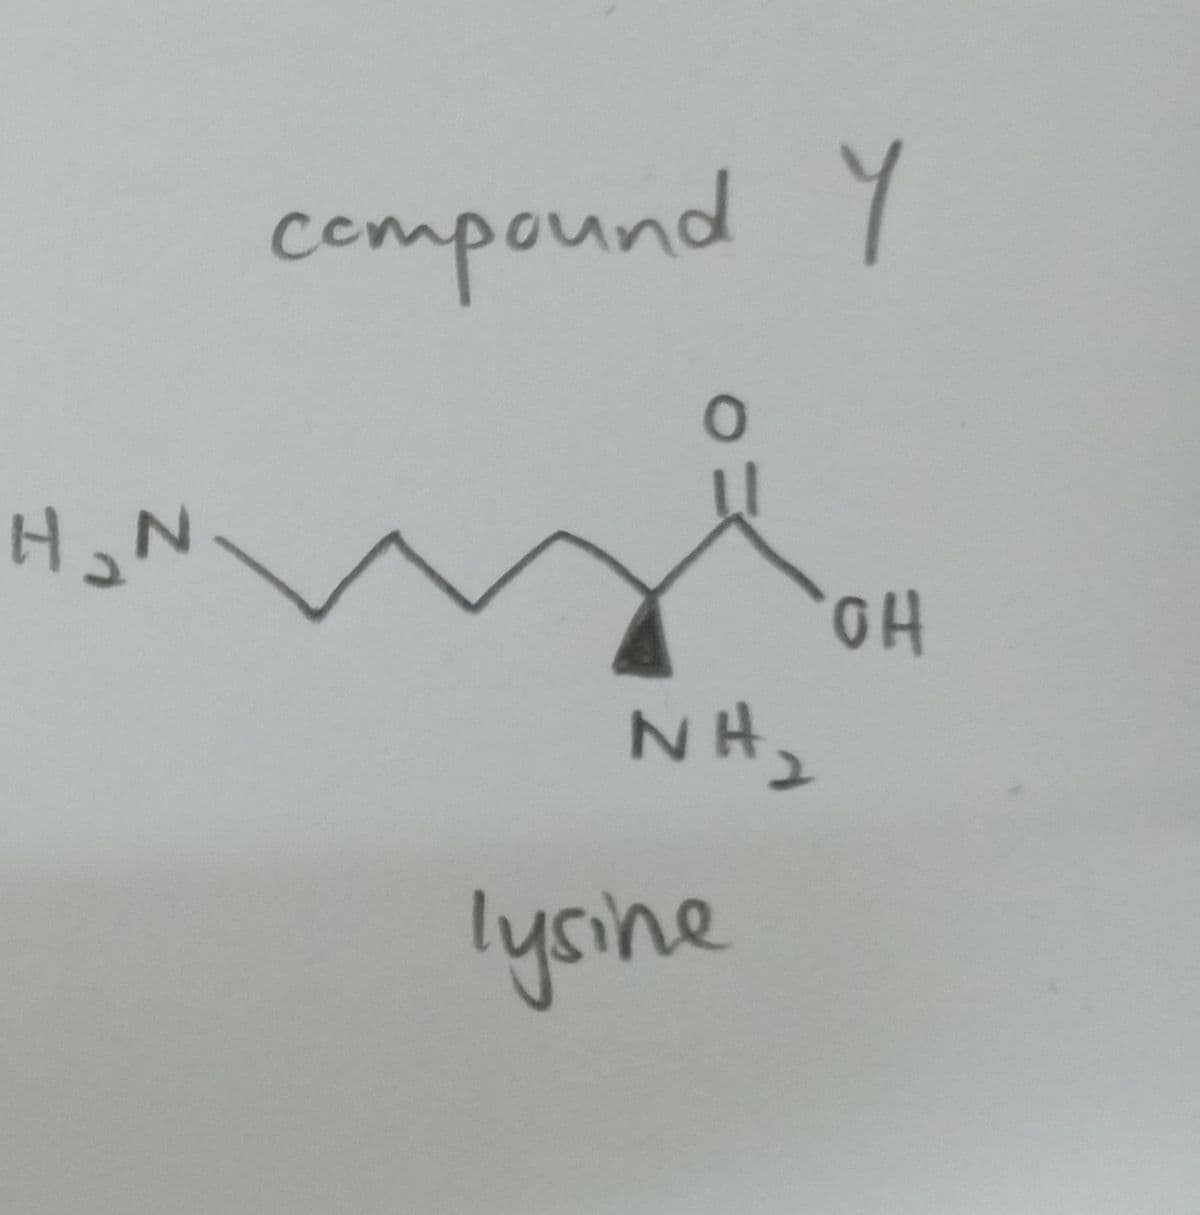 compound Y
NH2
lysine
